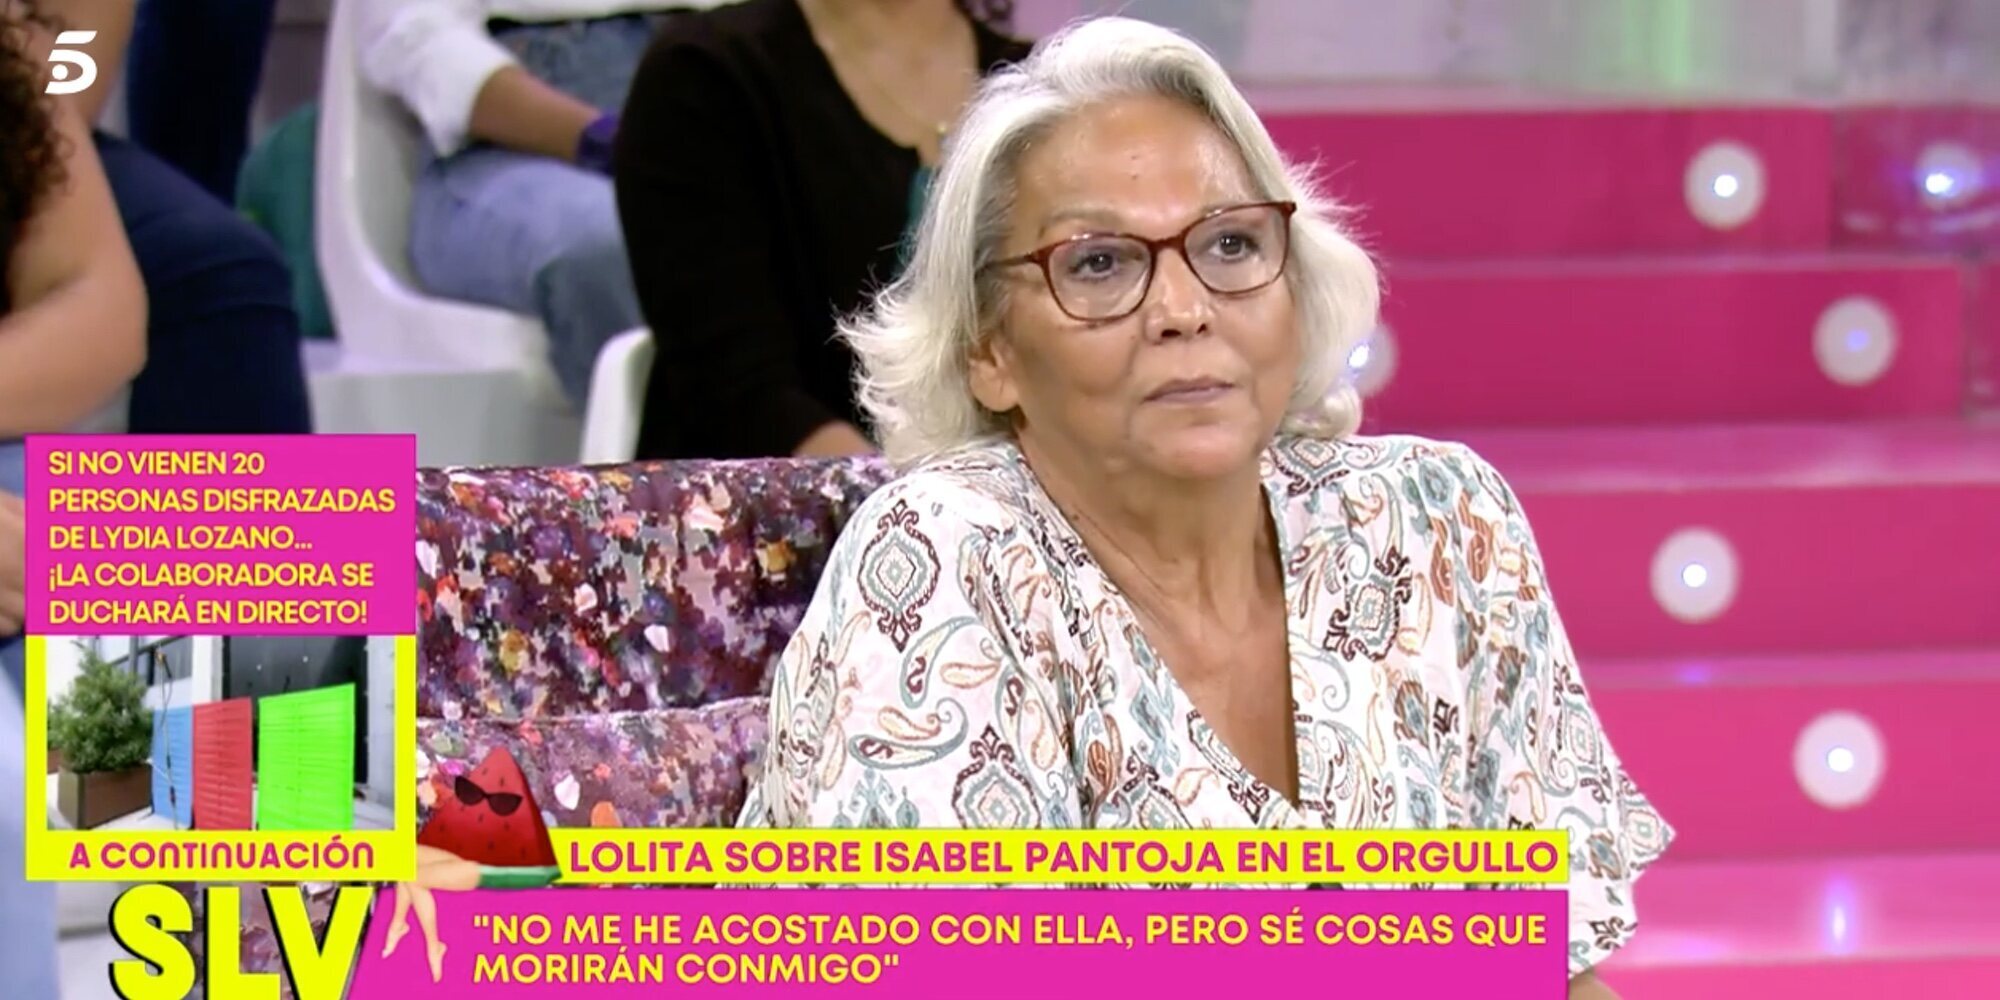 Charo Vega manda un emotivo mensaje a Isabel Pantoja: "Te echo mucho de menos, me acuerdo mucho de ti"